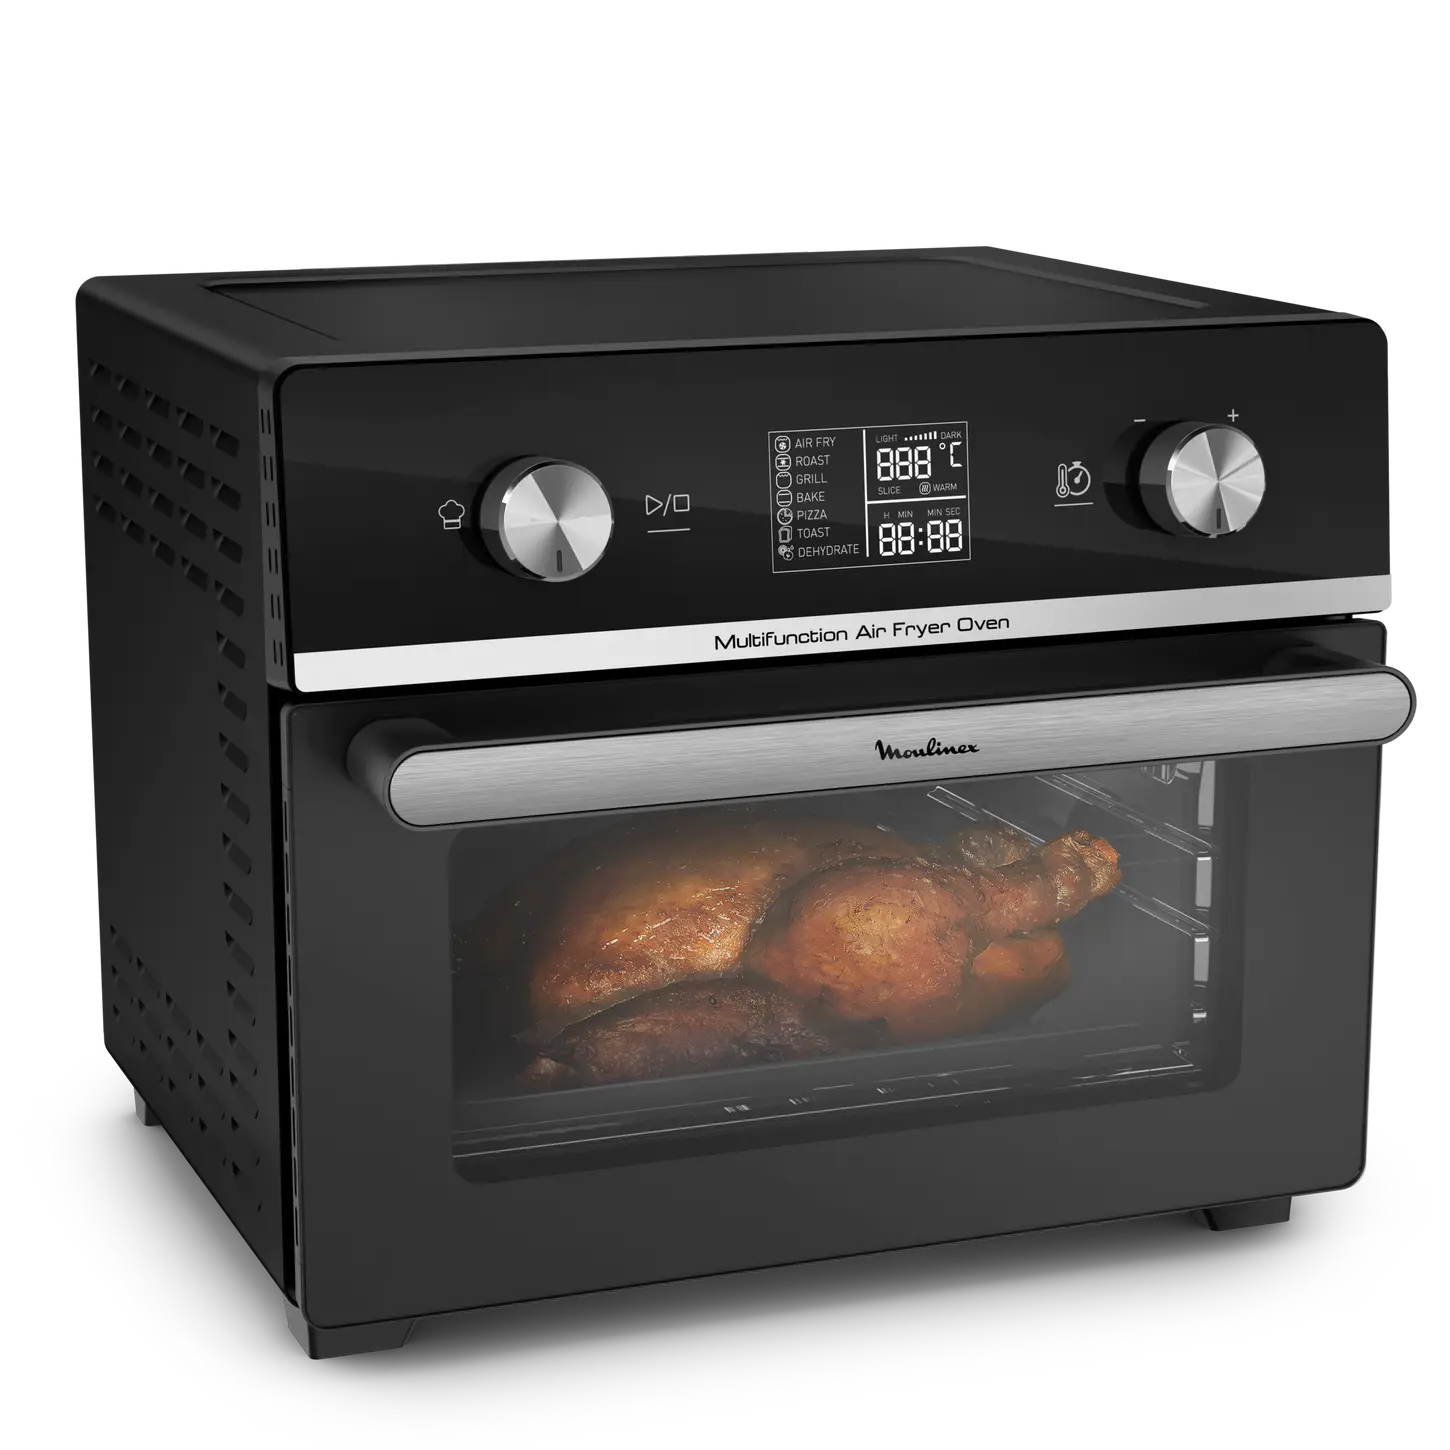 Ricambi e accessori Friggitrici ad aria Moulinex Easy Fry Multifunzione Air Fry Oven 10 in 1 20 L - AL605820